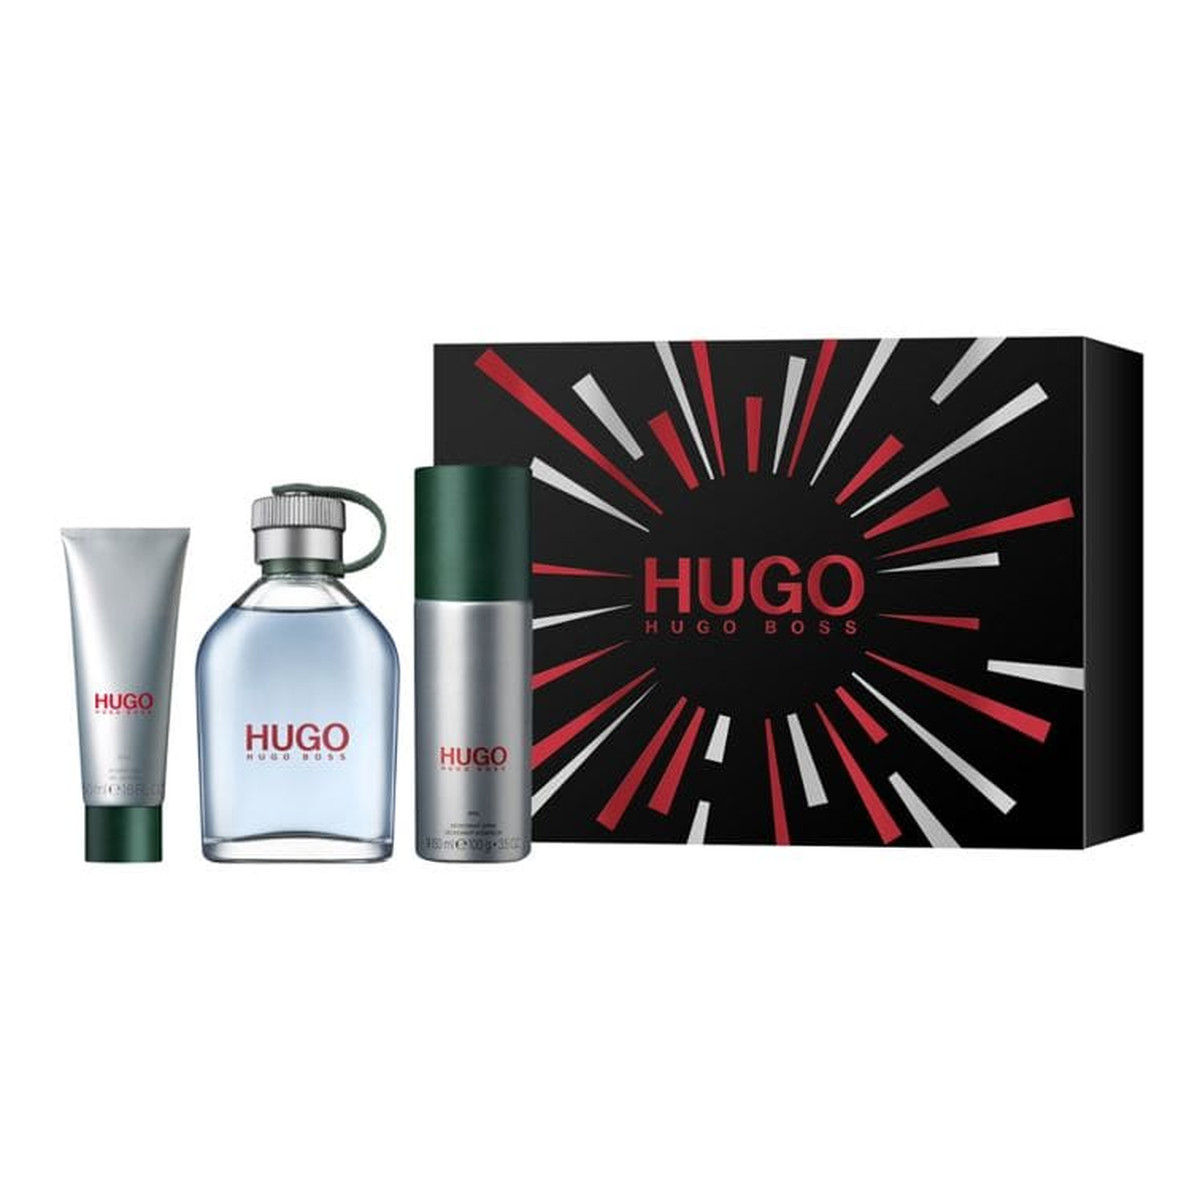 Hugo Boss Hugo Man zestaw (woda toaletowa 125ml + dezodorant 150ml + żel pod prysznic 50ml)